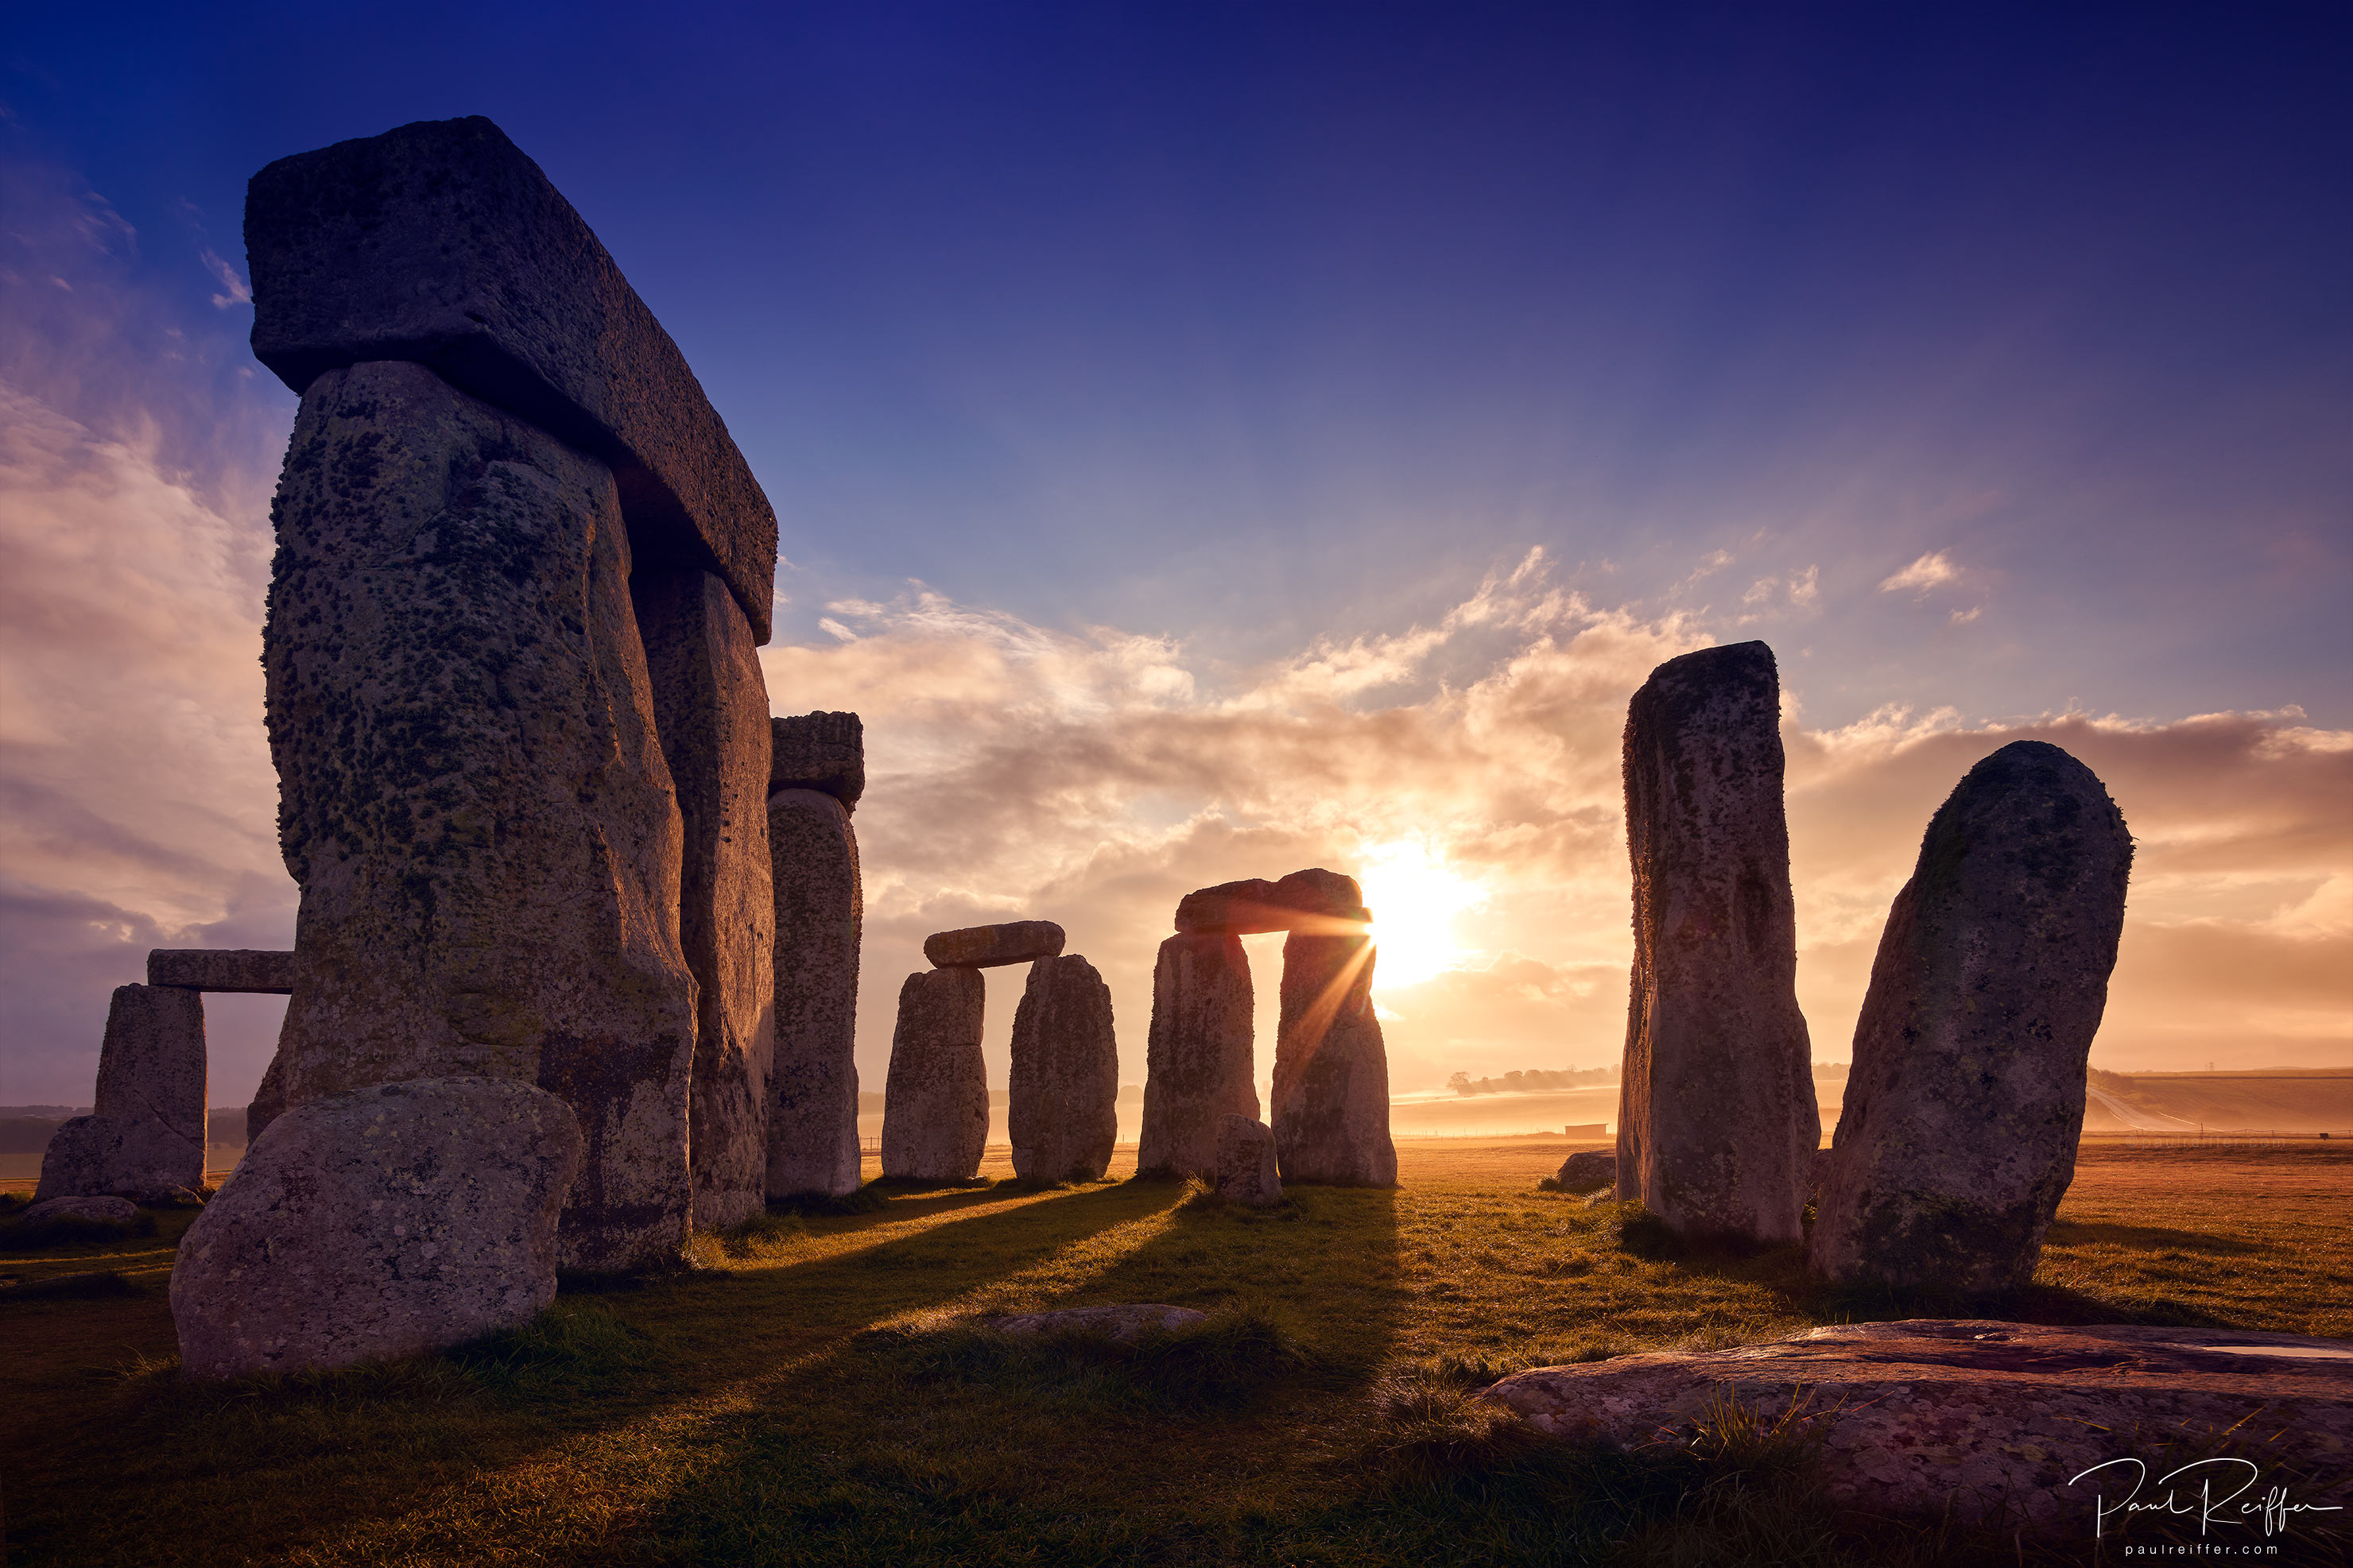 sunrise tour of stonehenge